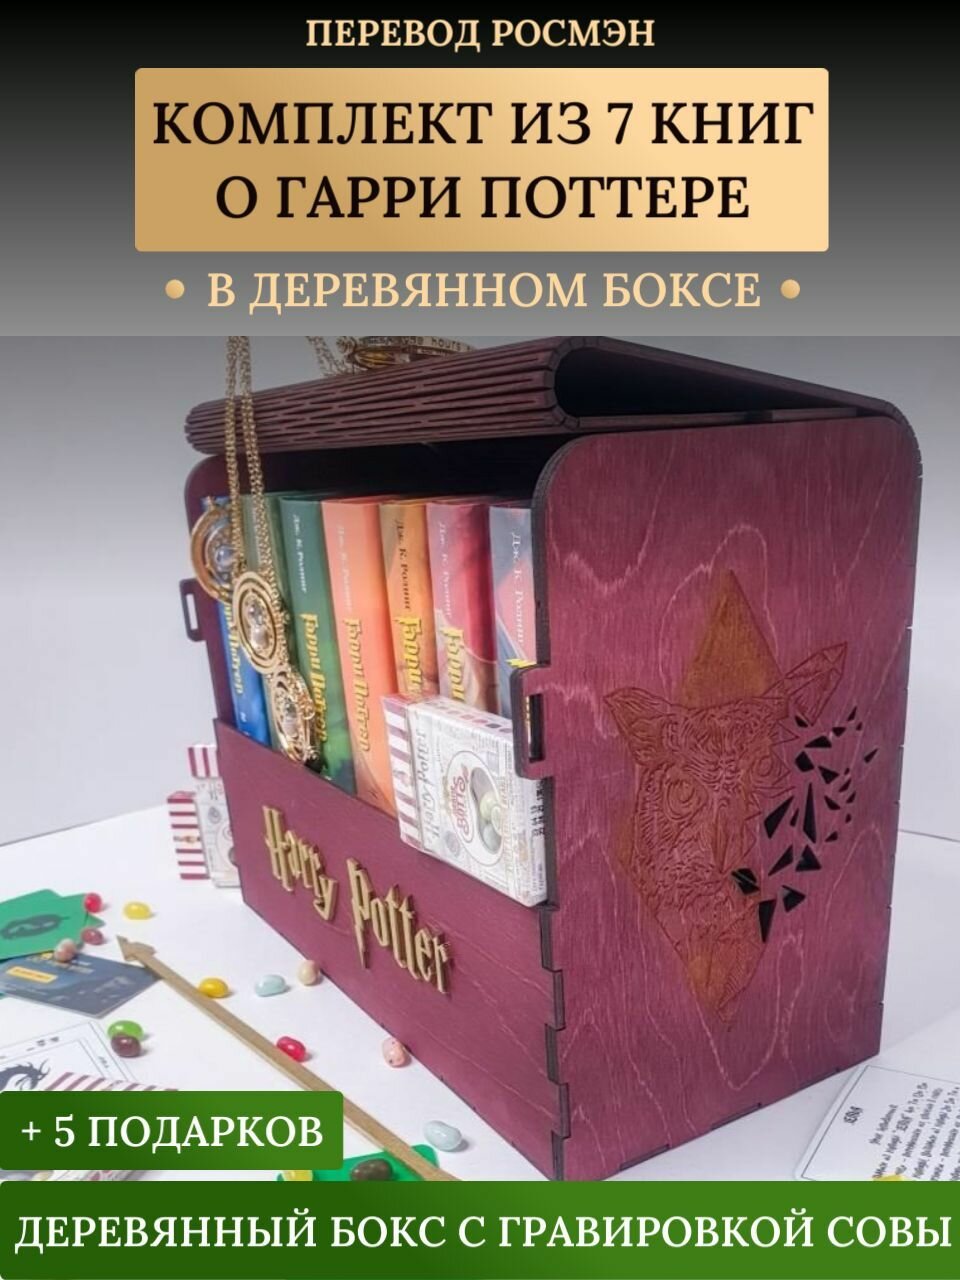 Книги Гарри Поттер Росмэн. Комплект 7 книг в сундуке (цвет - махагон) + 5 подарков (Роулинг Д. К.)